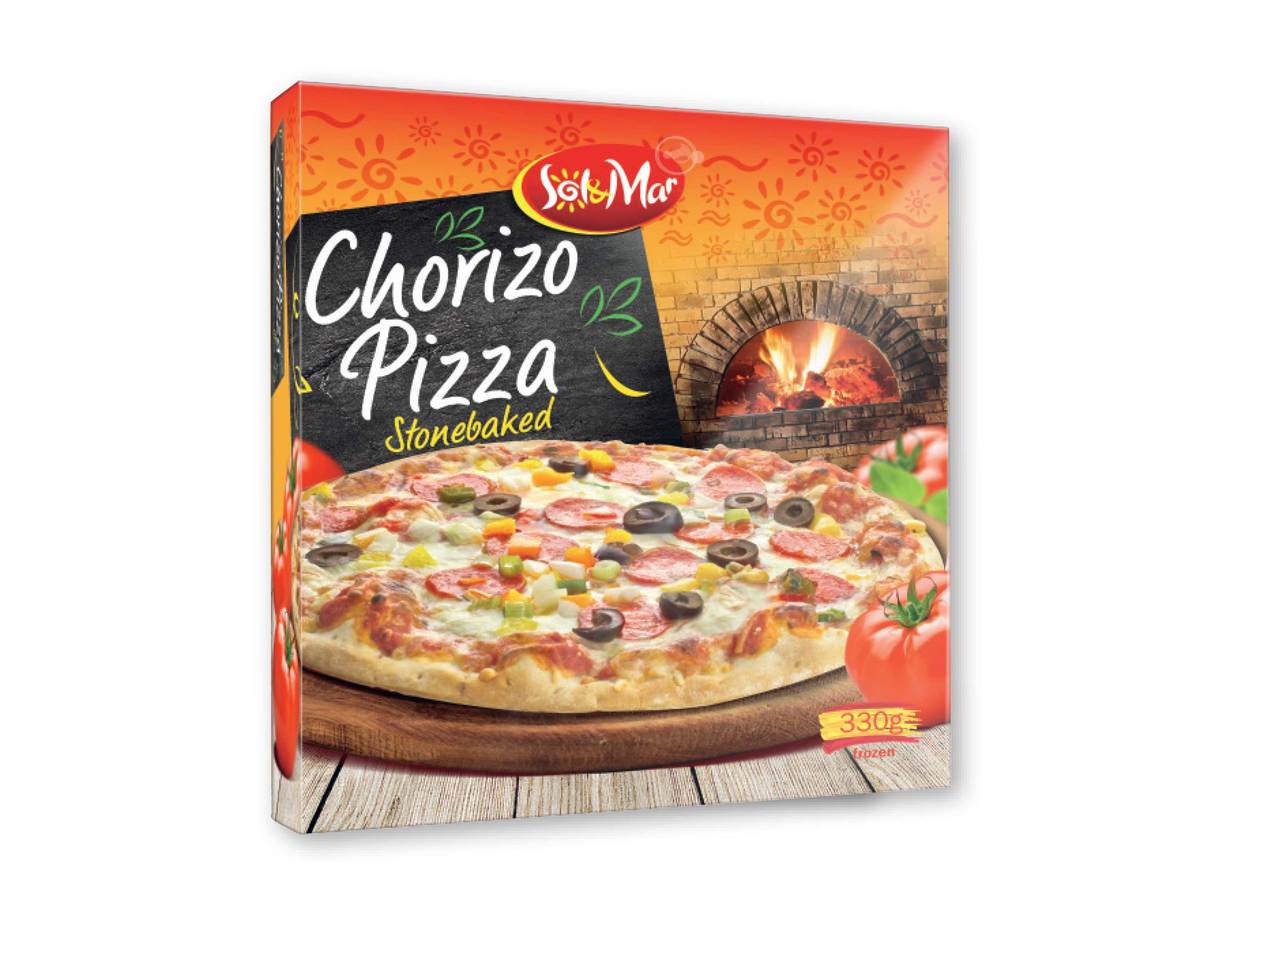 Stonebaked Chorizo Pizza